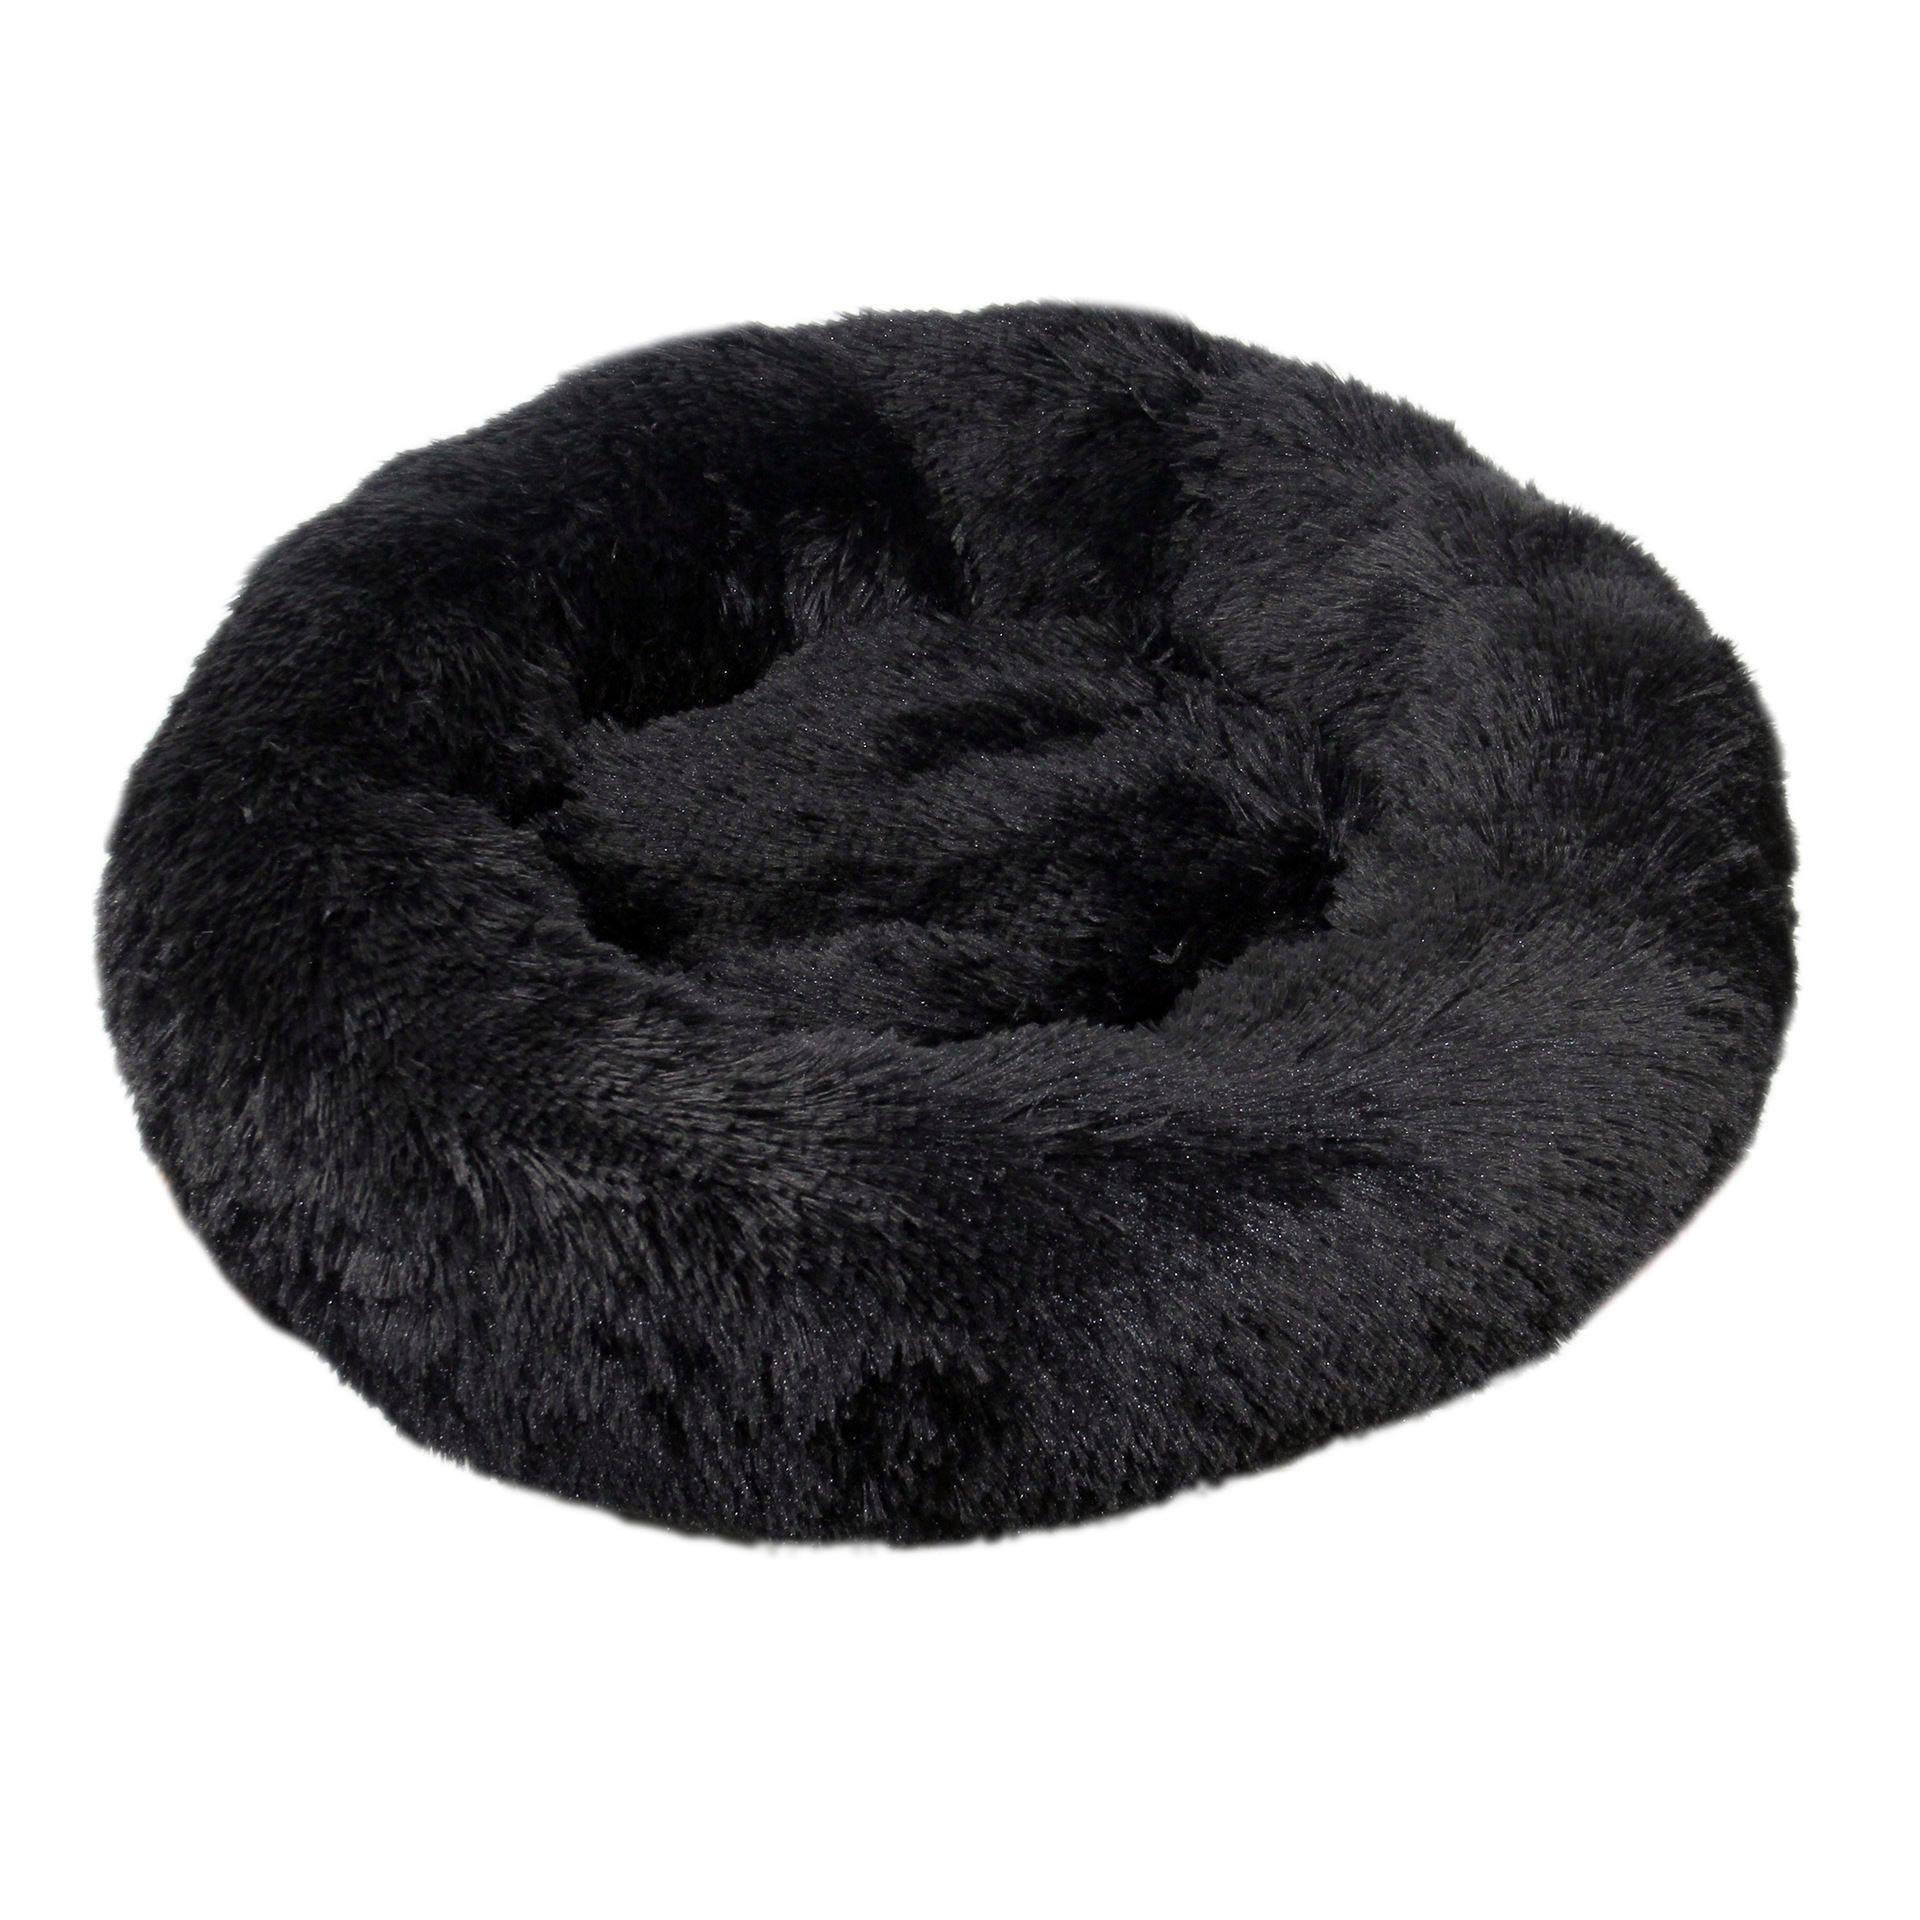 Wholesale Soft Luxury Round Designer Plush Dog Cat Pet Beds